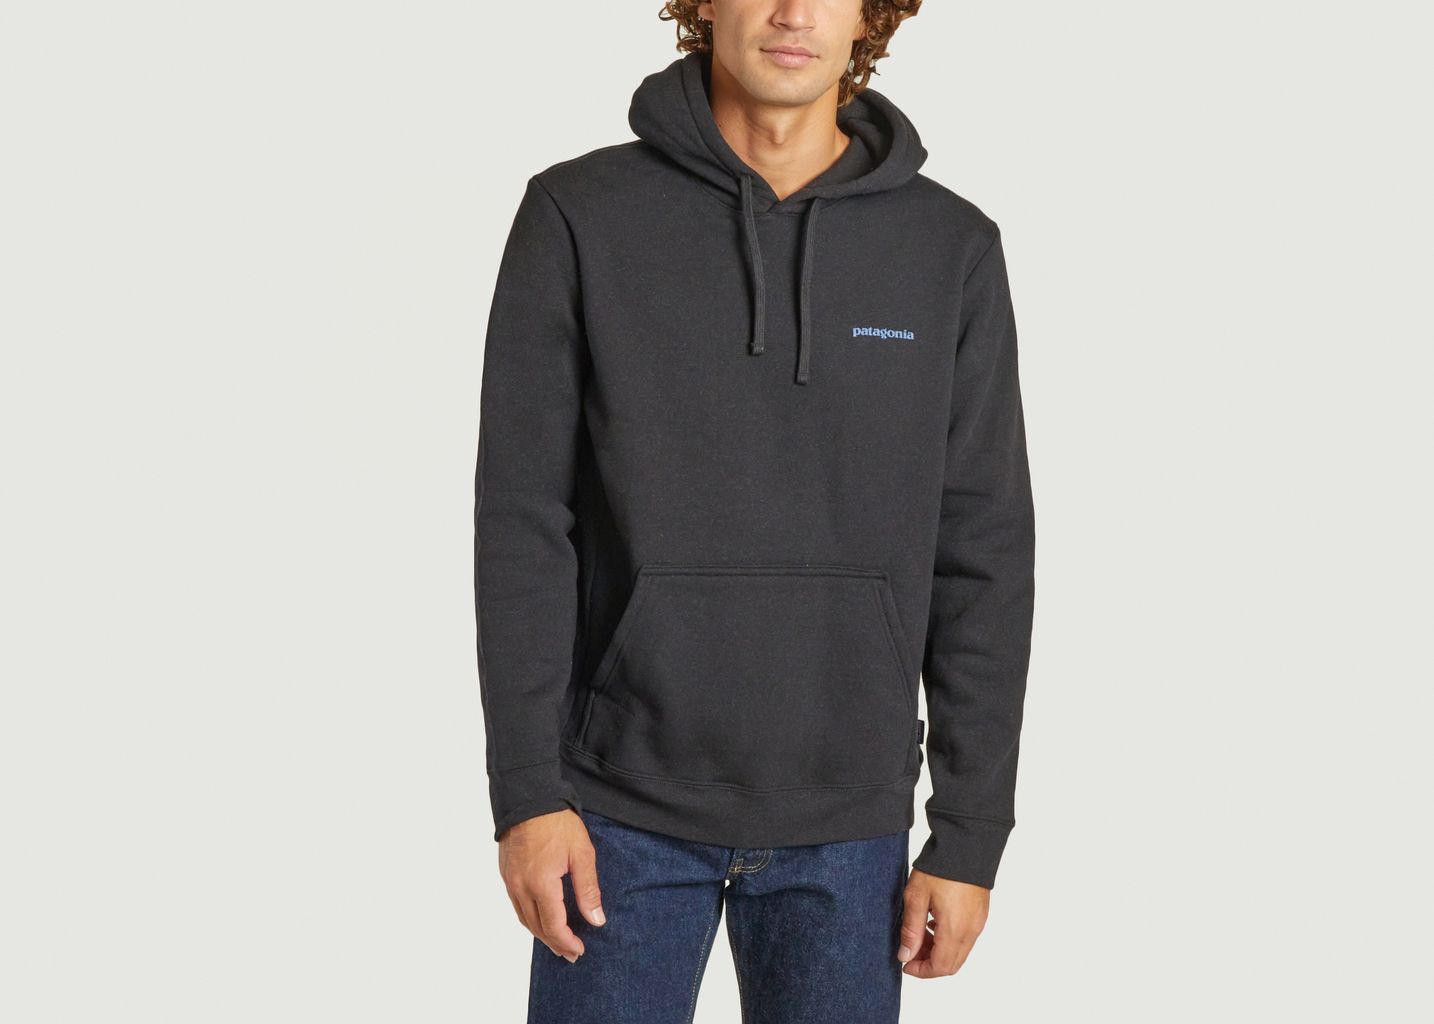 Boardshort Logo Uprisal hoodie - Patagonia